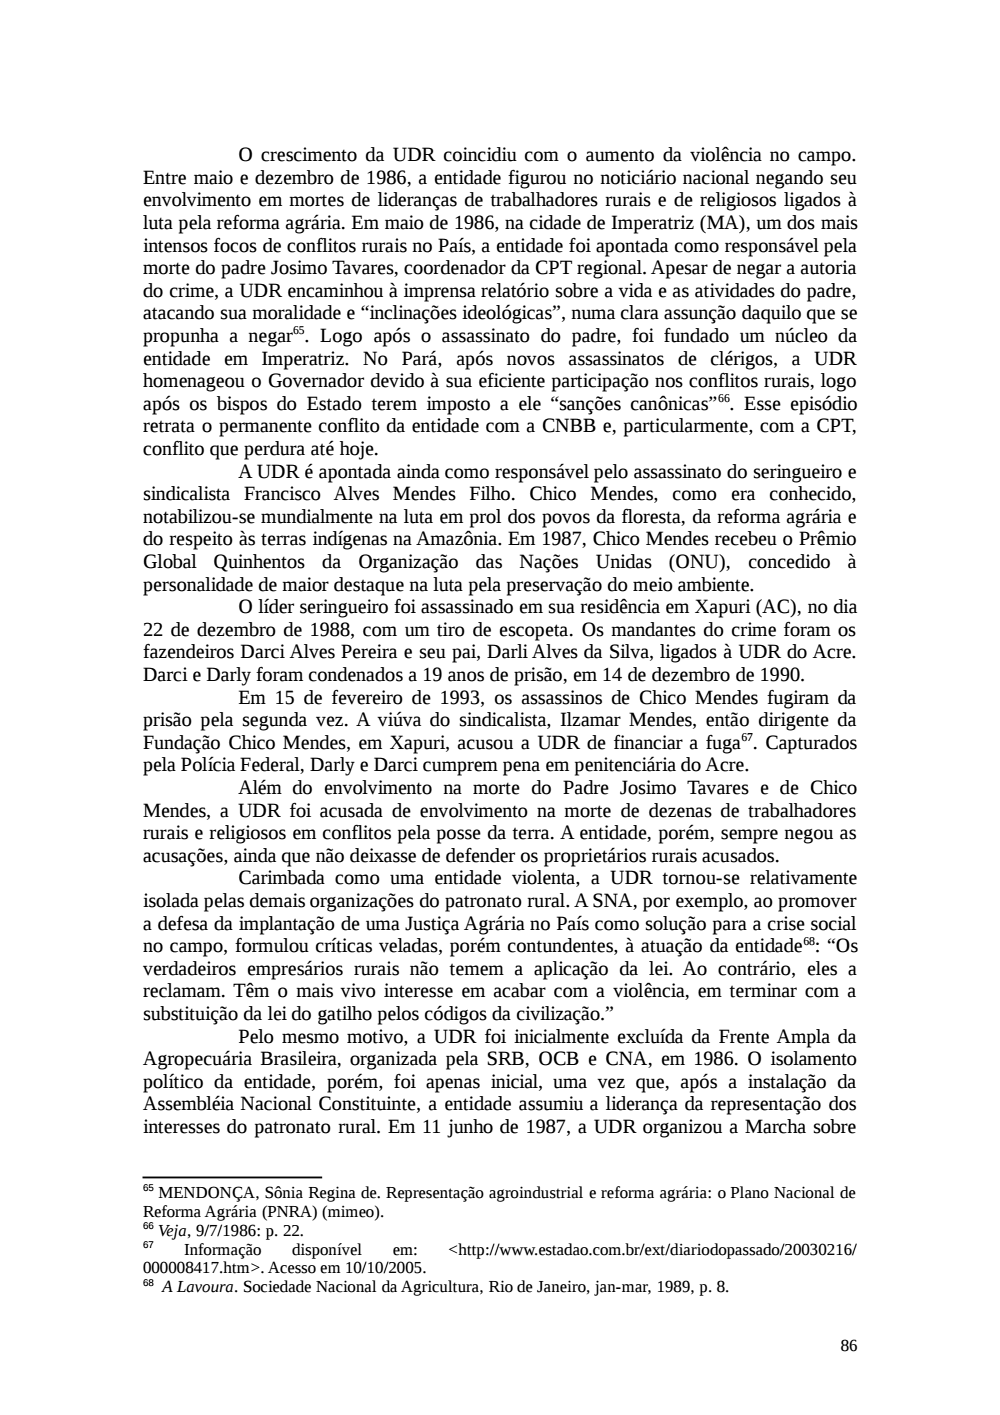 Page 86 from Relatório final da comissão